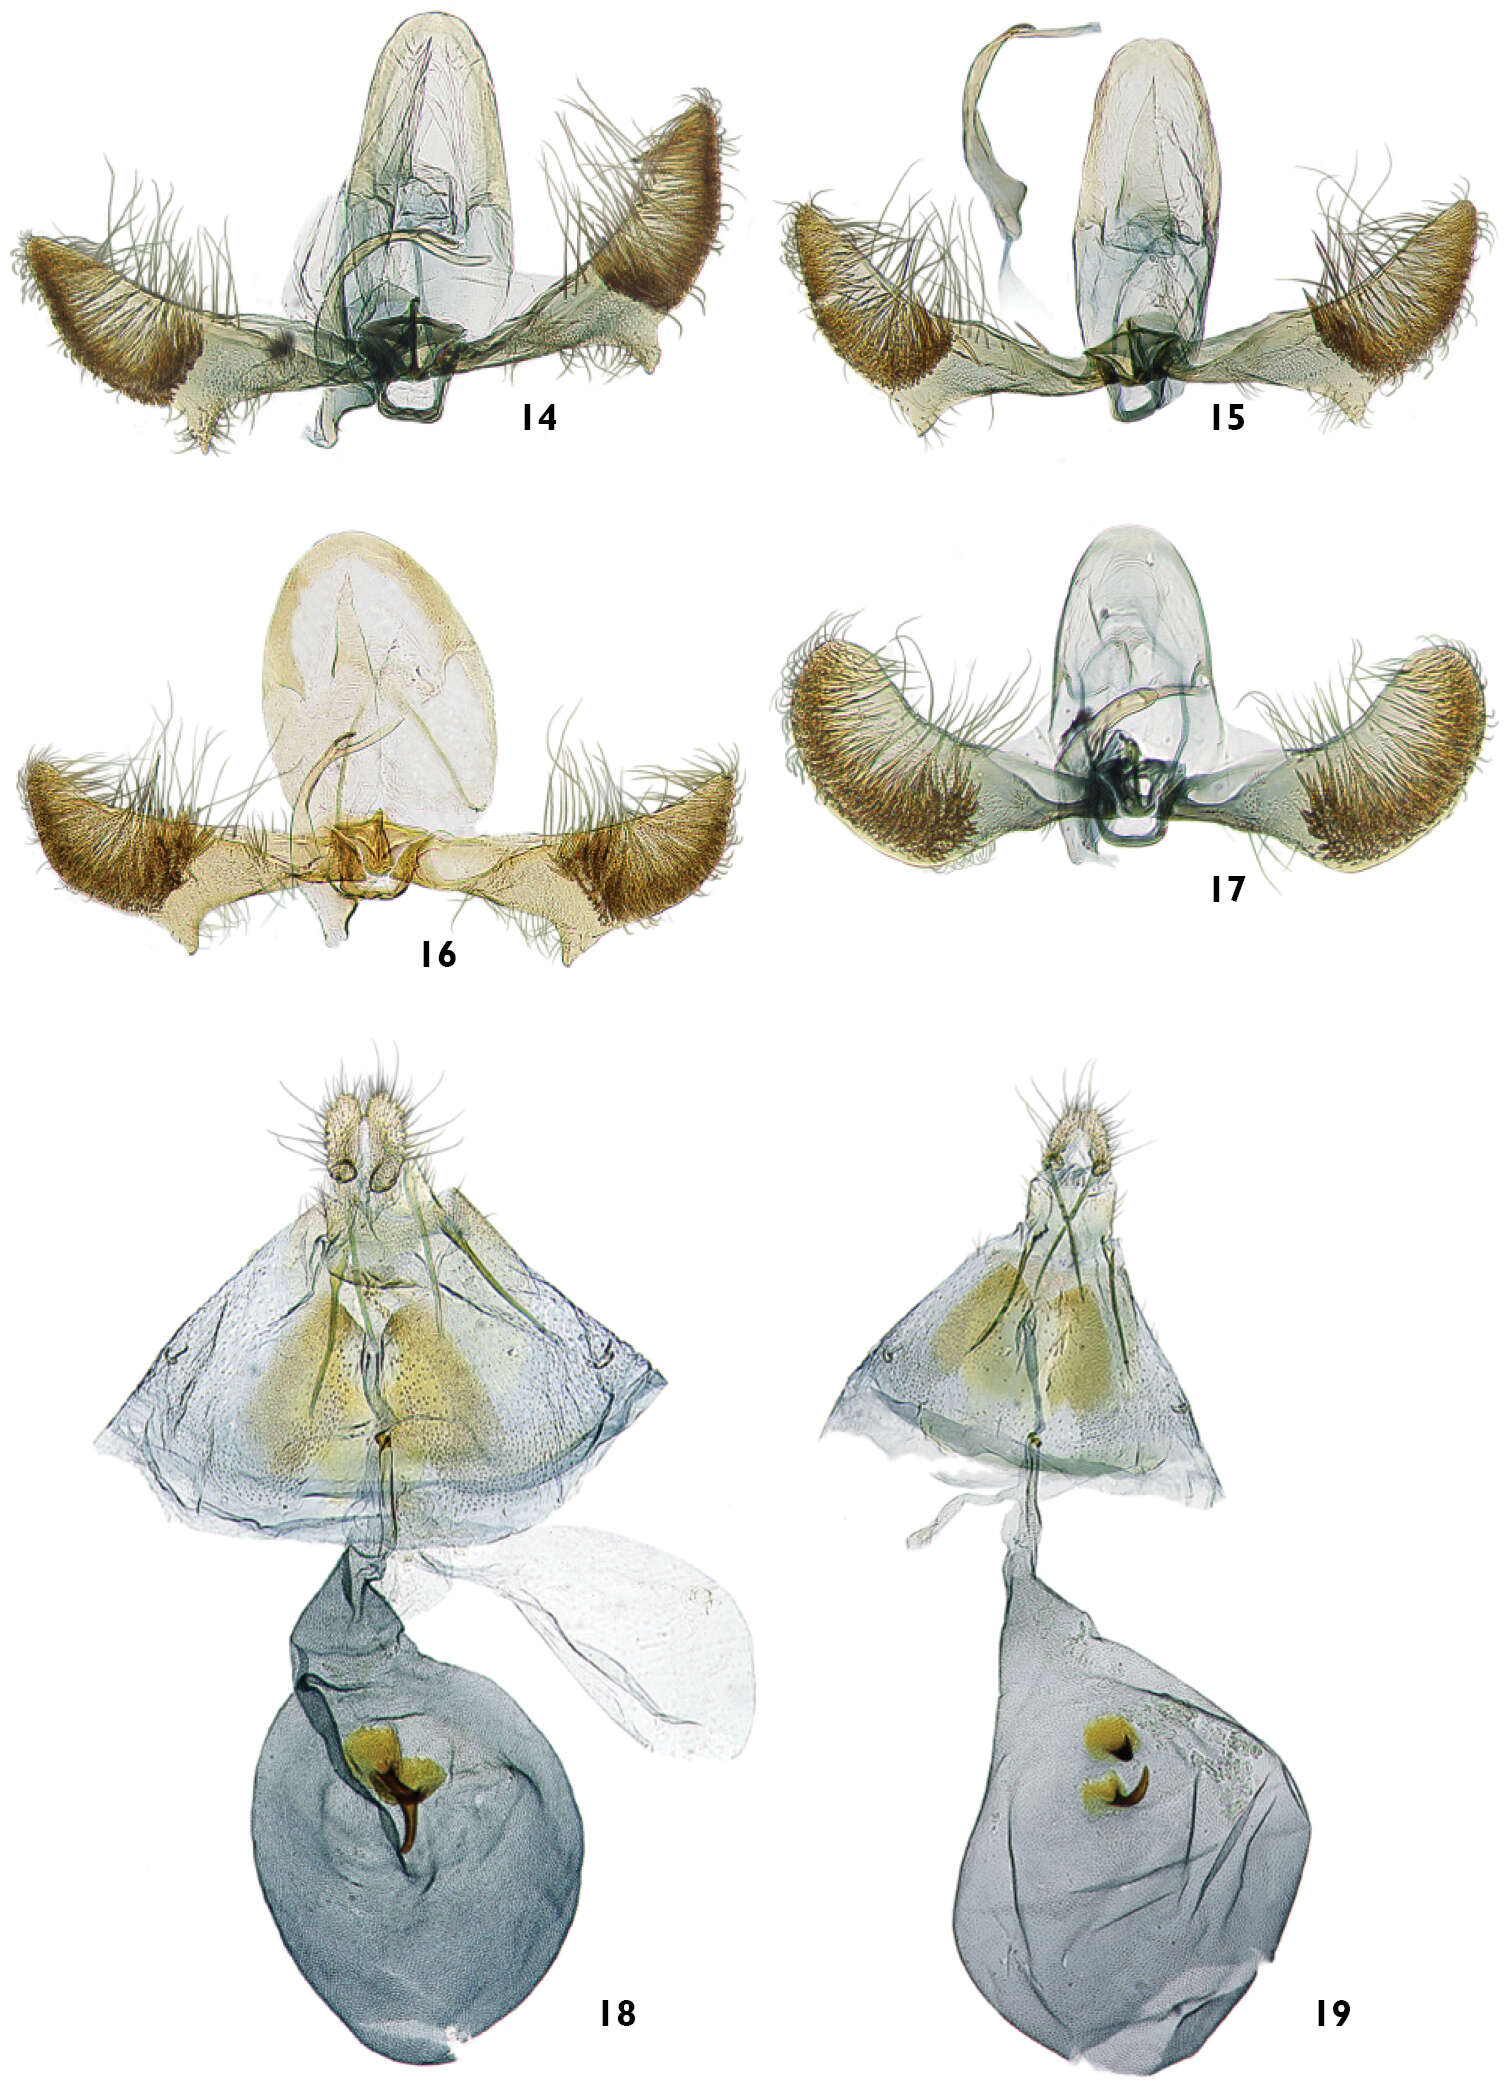 Image of Olethreutinae